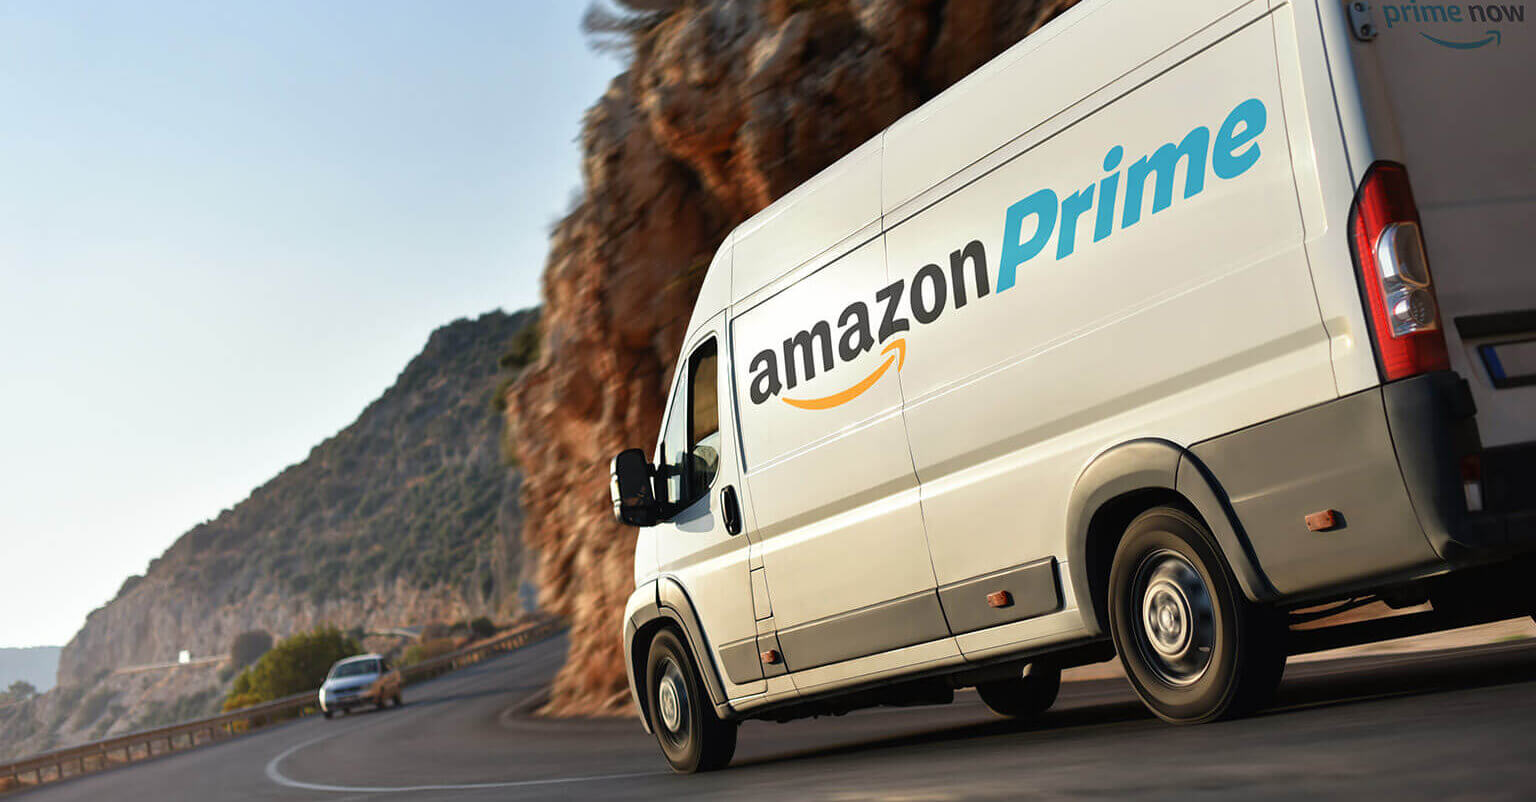 Amazon truck on road